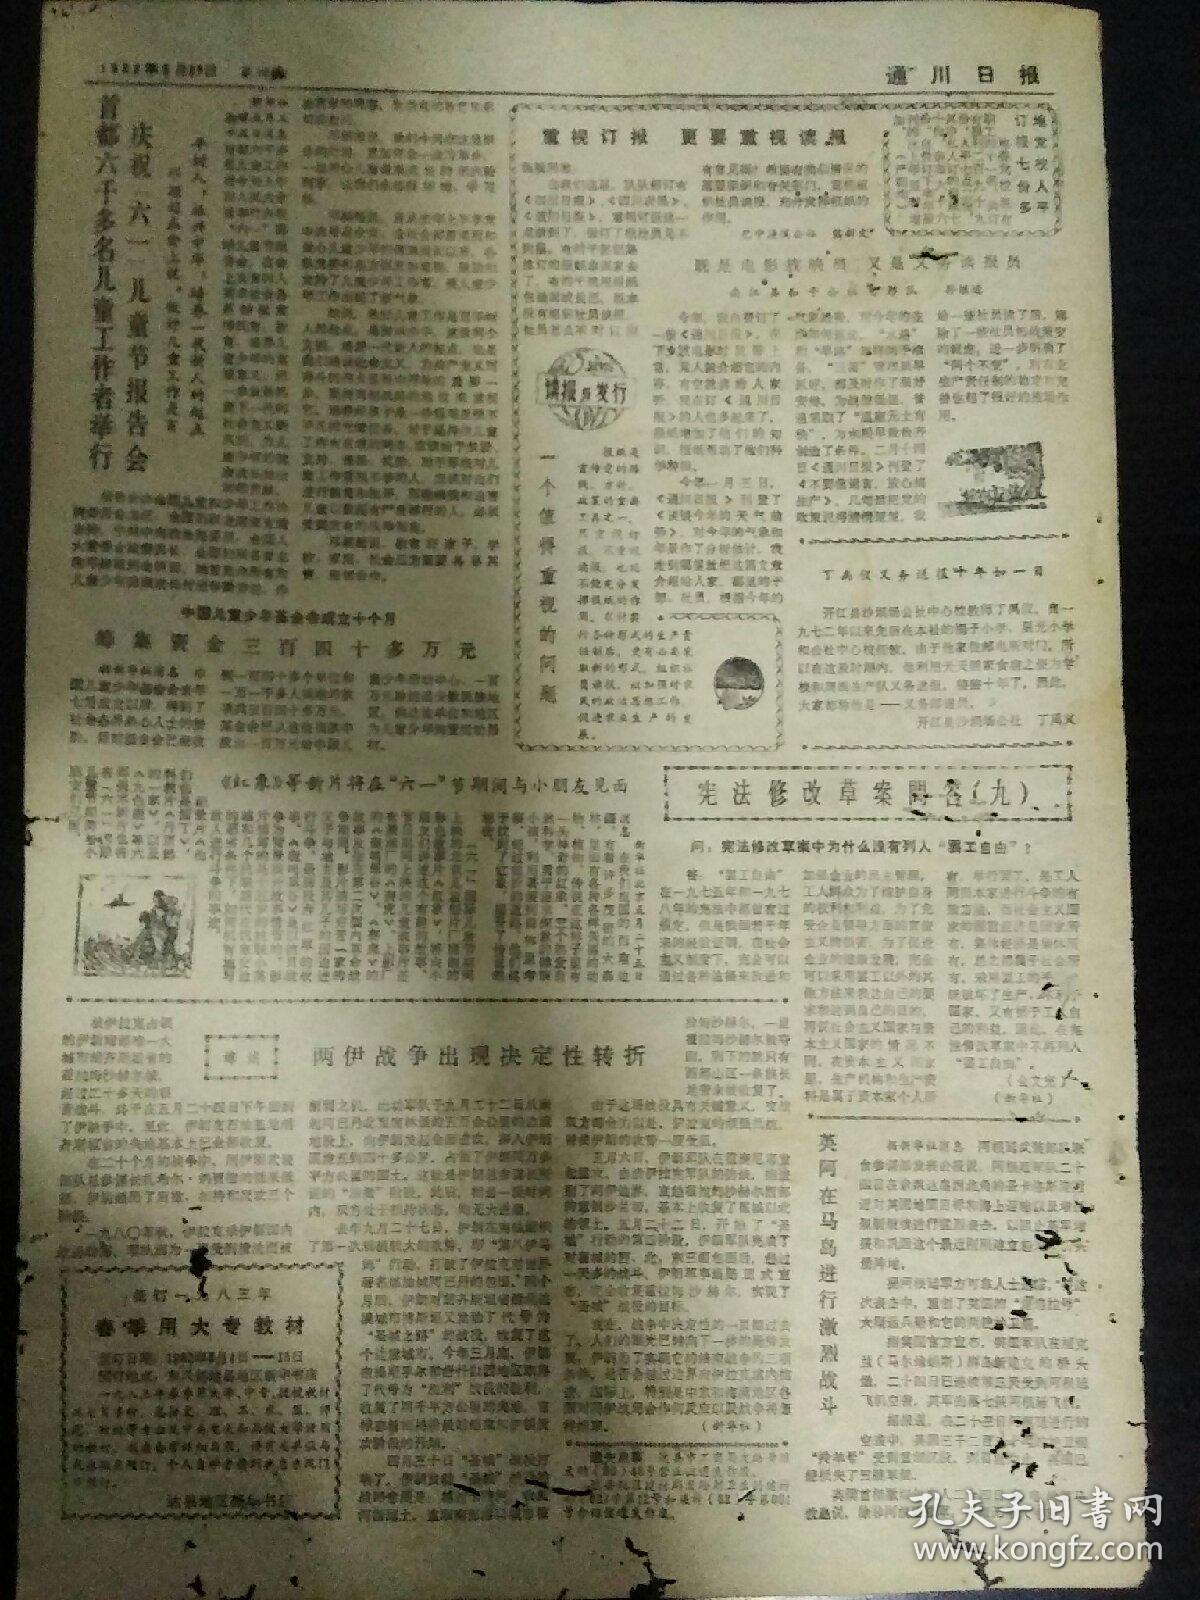 通川日报1982年5月27日（8开四版）
确保夏粮丰收安全入库；
沙滩公社四大队林业生产迅速发展；